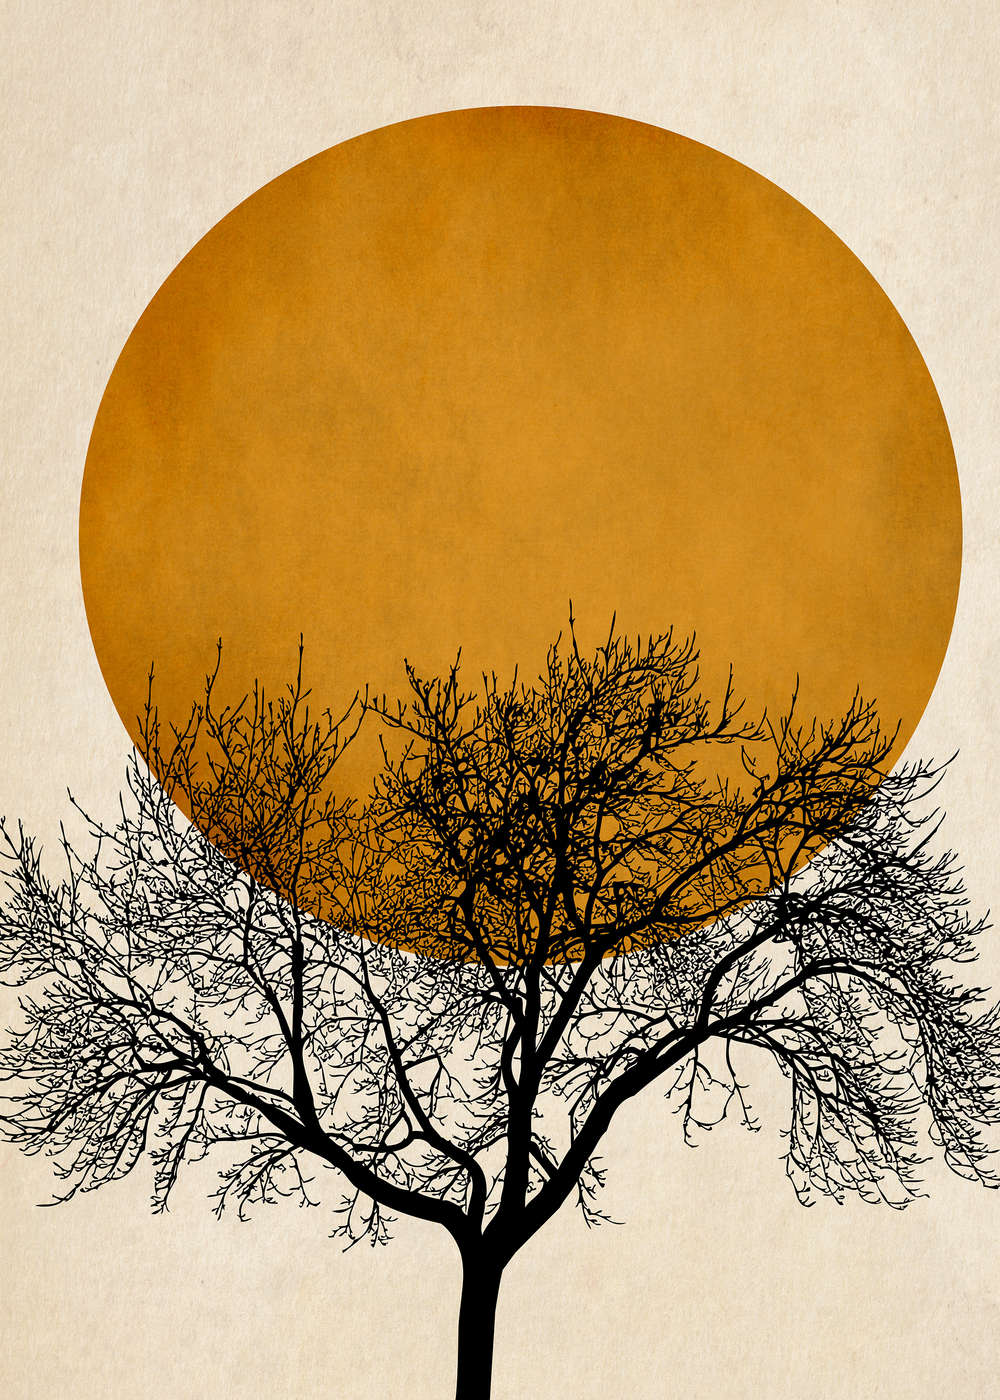             Papier peint panoramique couronne d'arbre coupe d'ombre avec or soleil
        